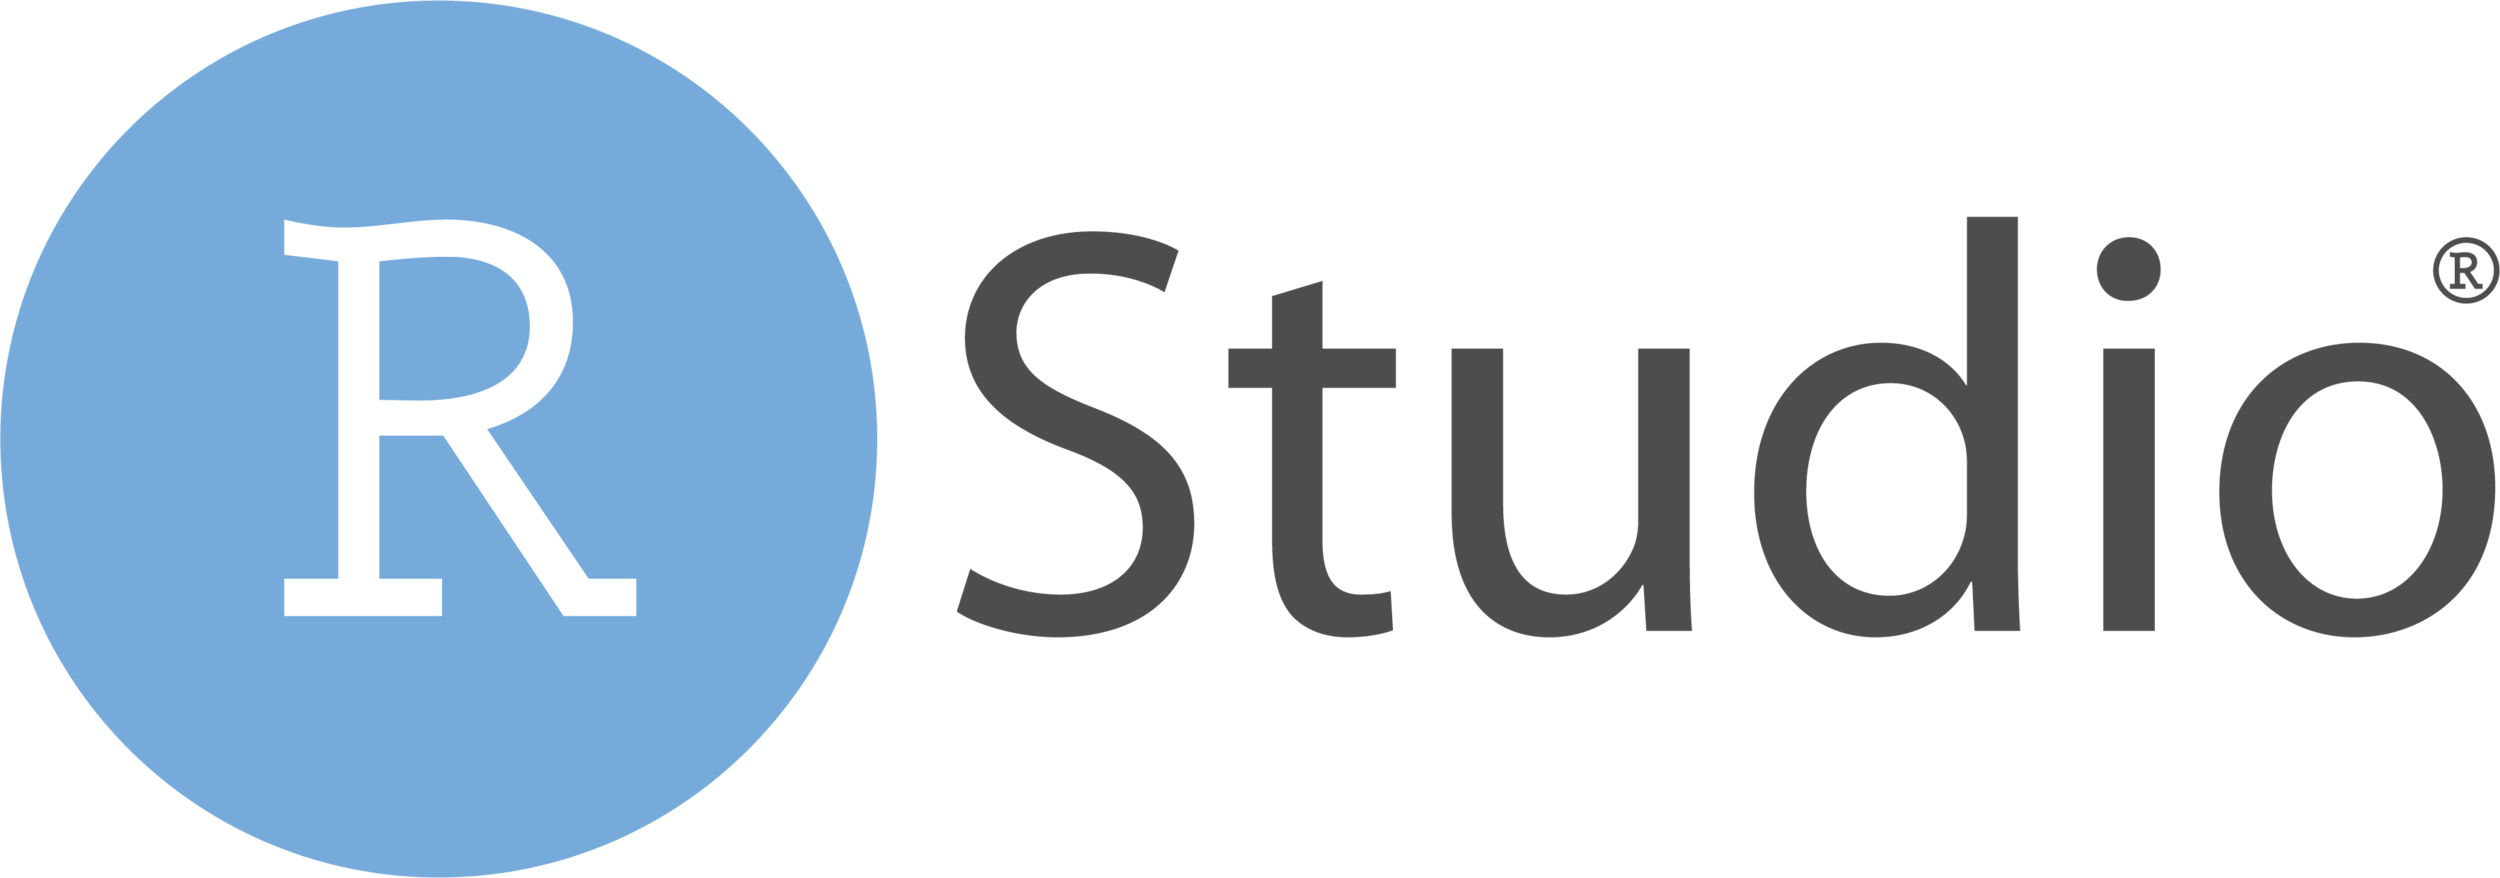 RStudio-Logo-Flat.png